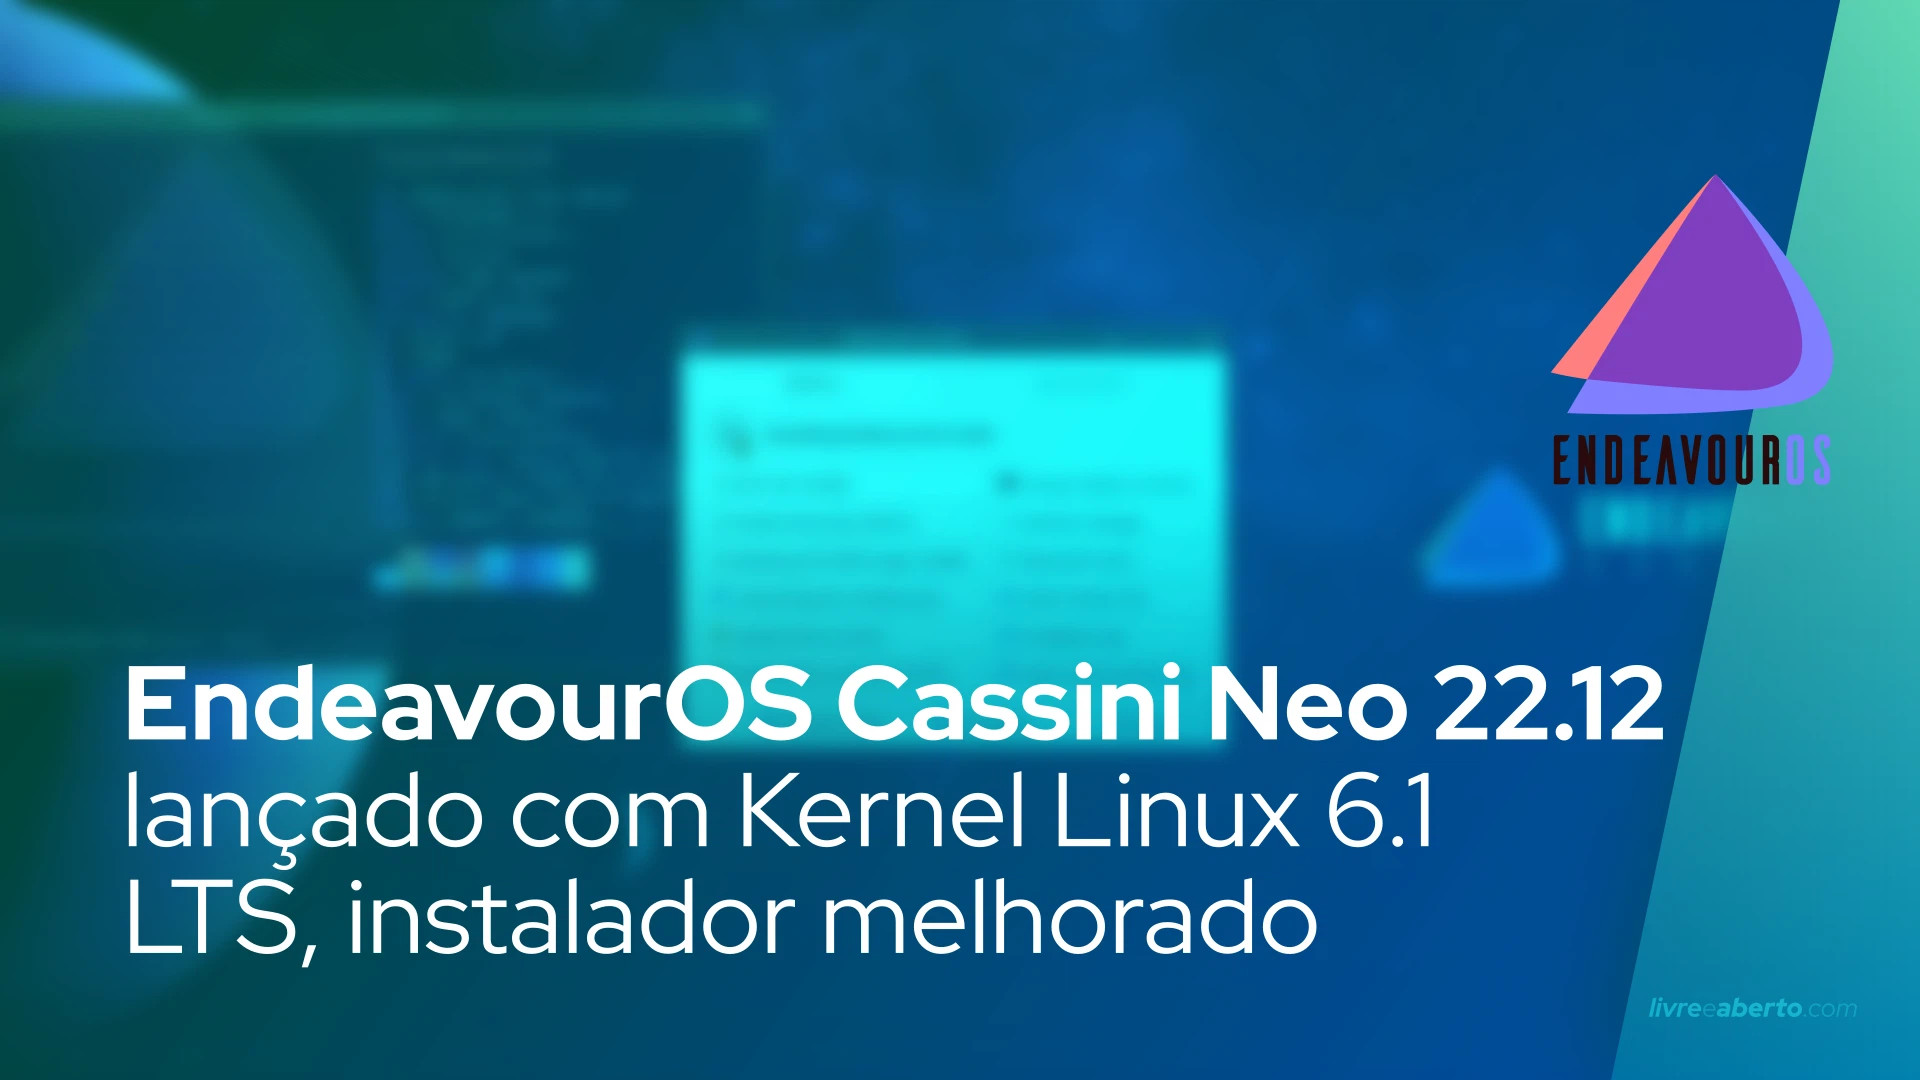 EndeavourOS Cassini Neo 22.12 lançado com Kernel Linux 6.1 LTS, instalador melhorado